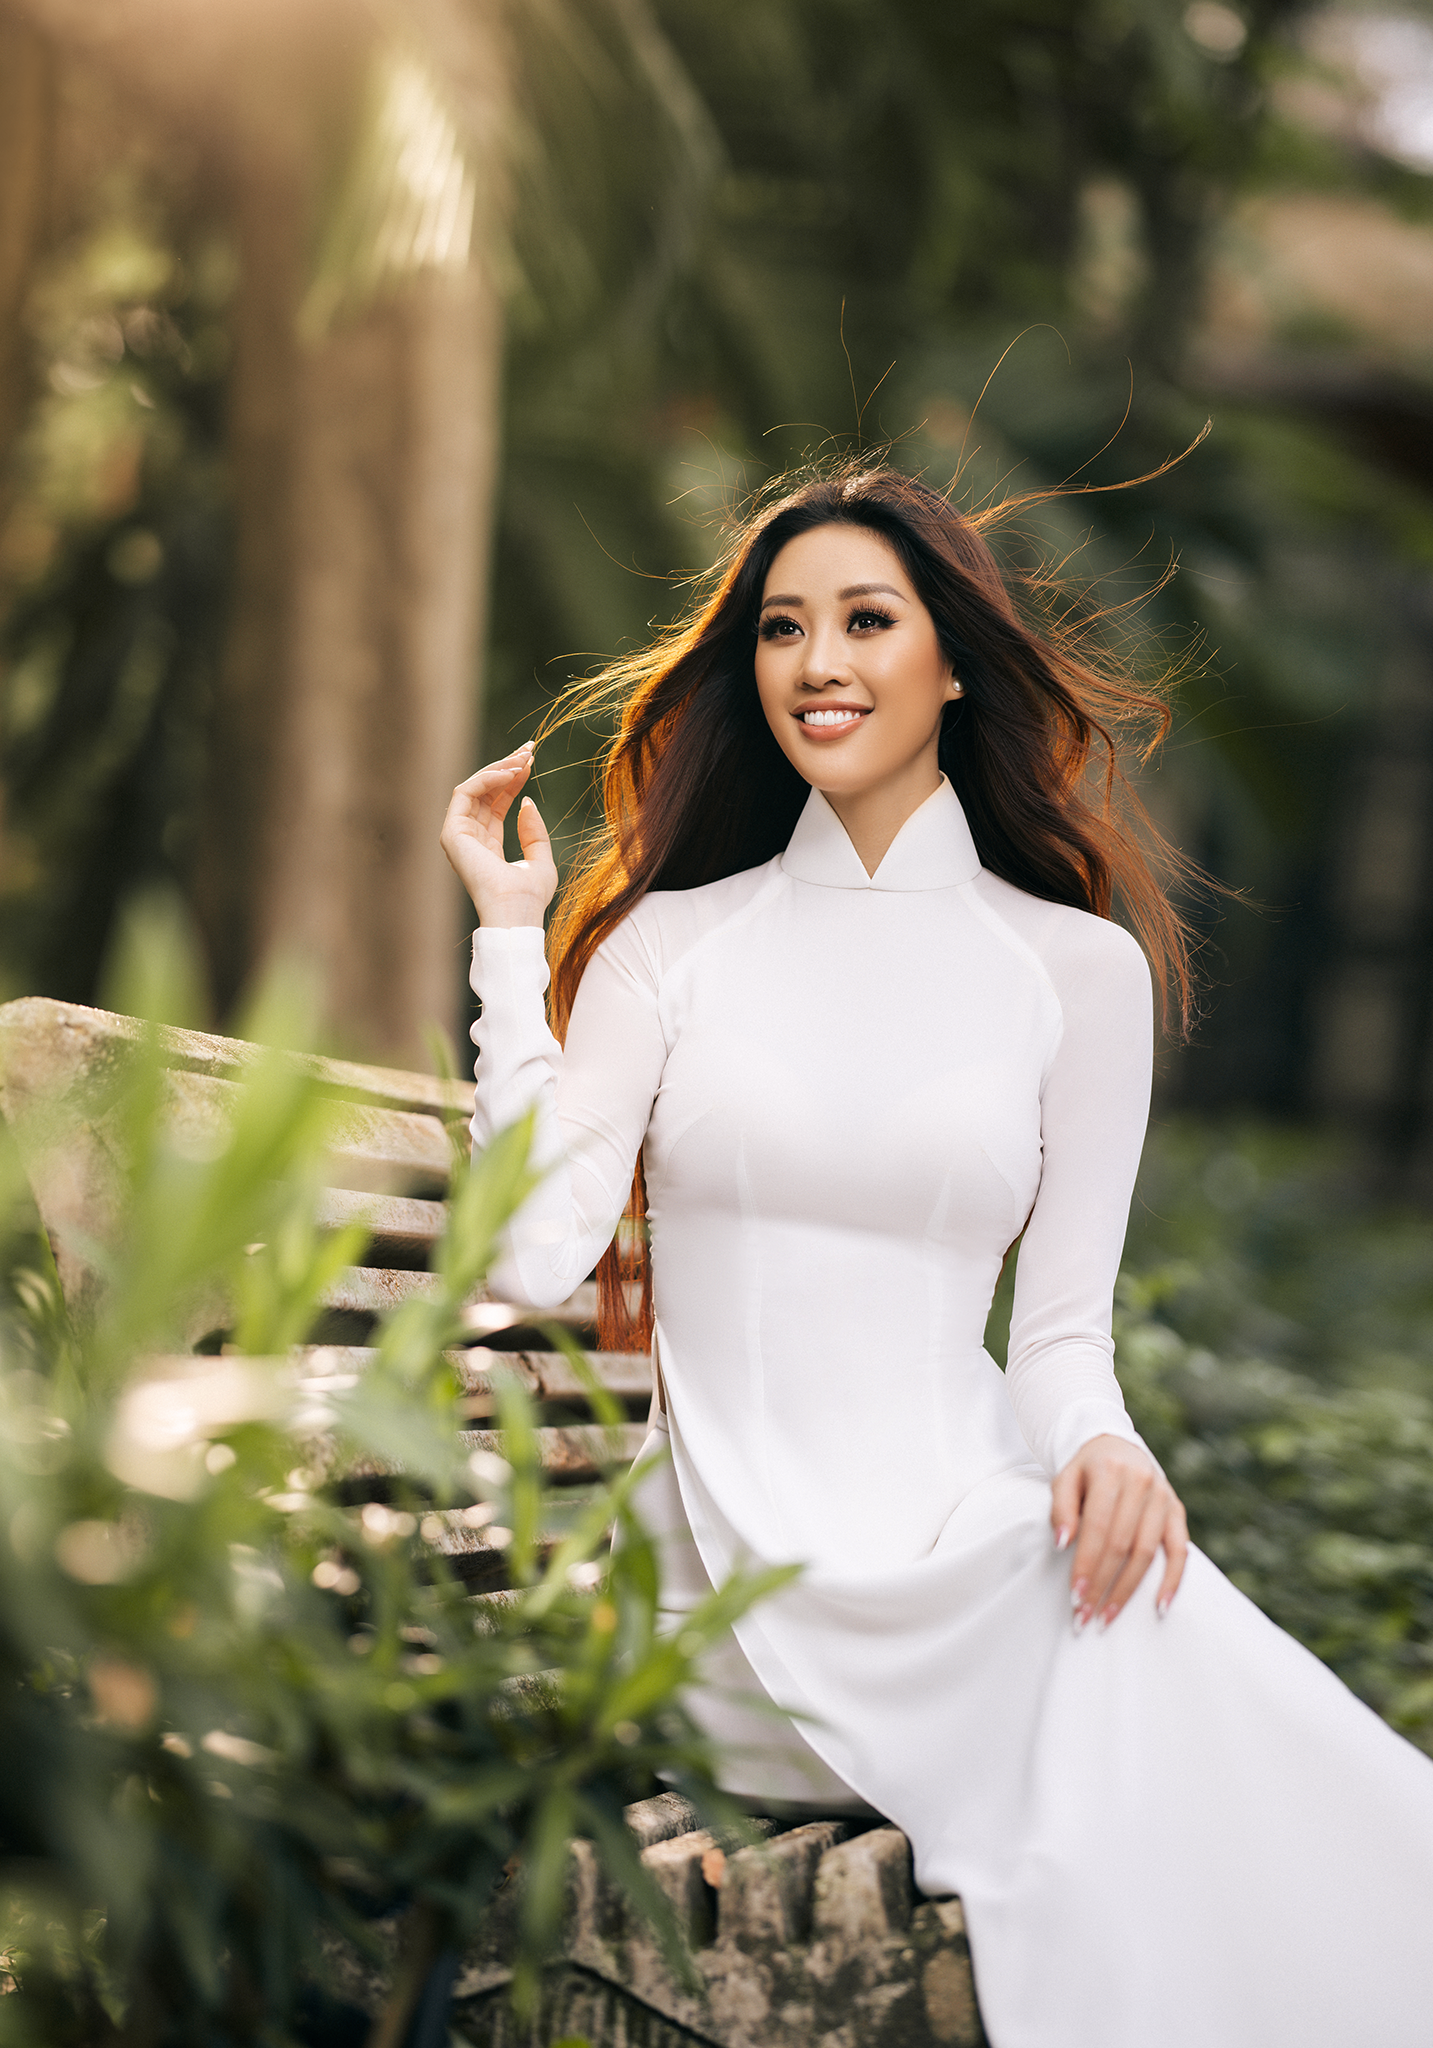 Hoa hậu Khánh Vân mặc áo dài trắng đẹp như mỹ nhân trong tranh